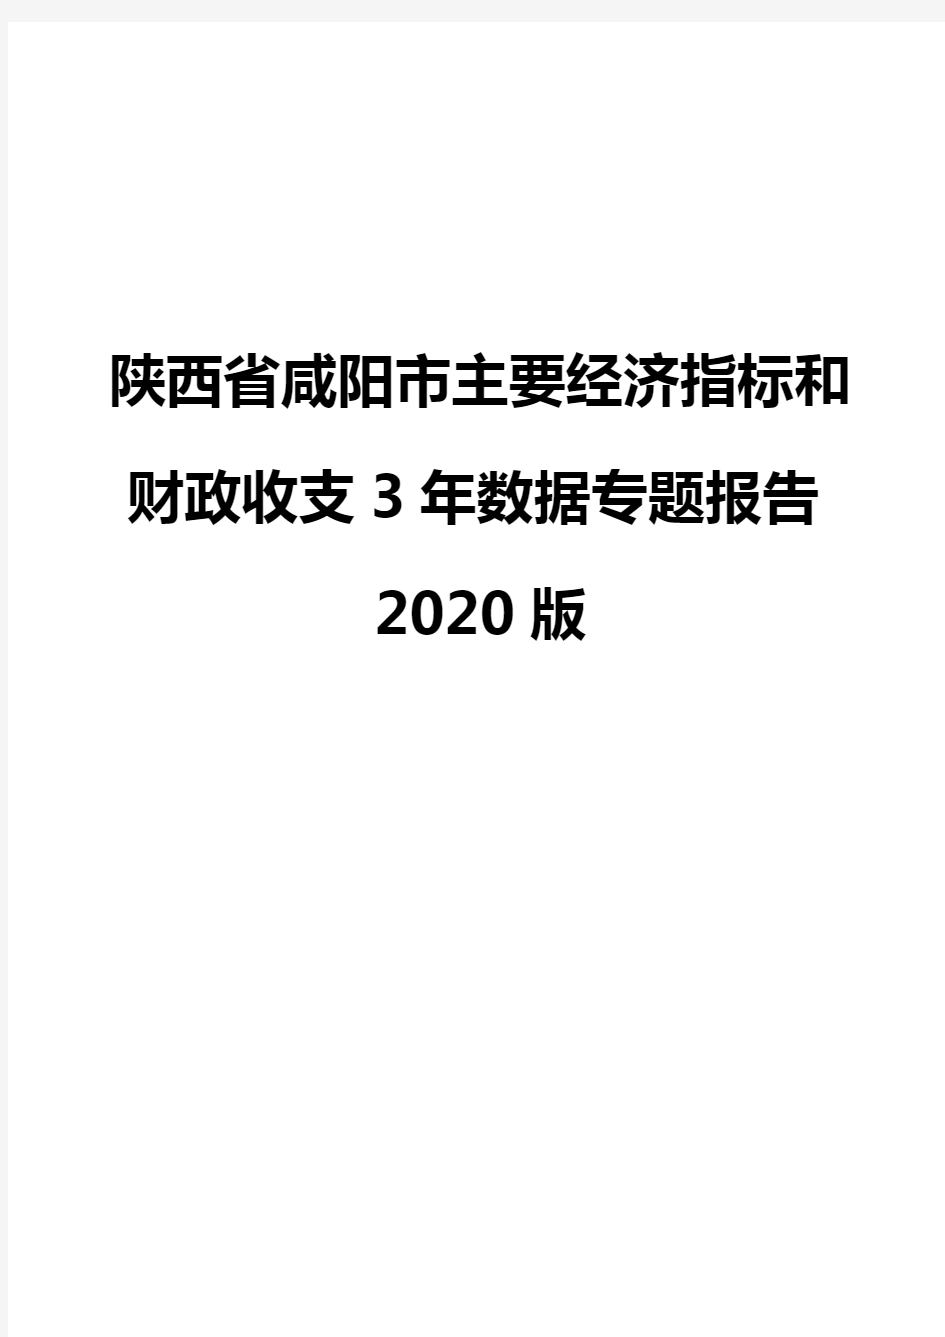 陕西省咸阳市主要经济指标和财政收支3年数据专题报告2020版